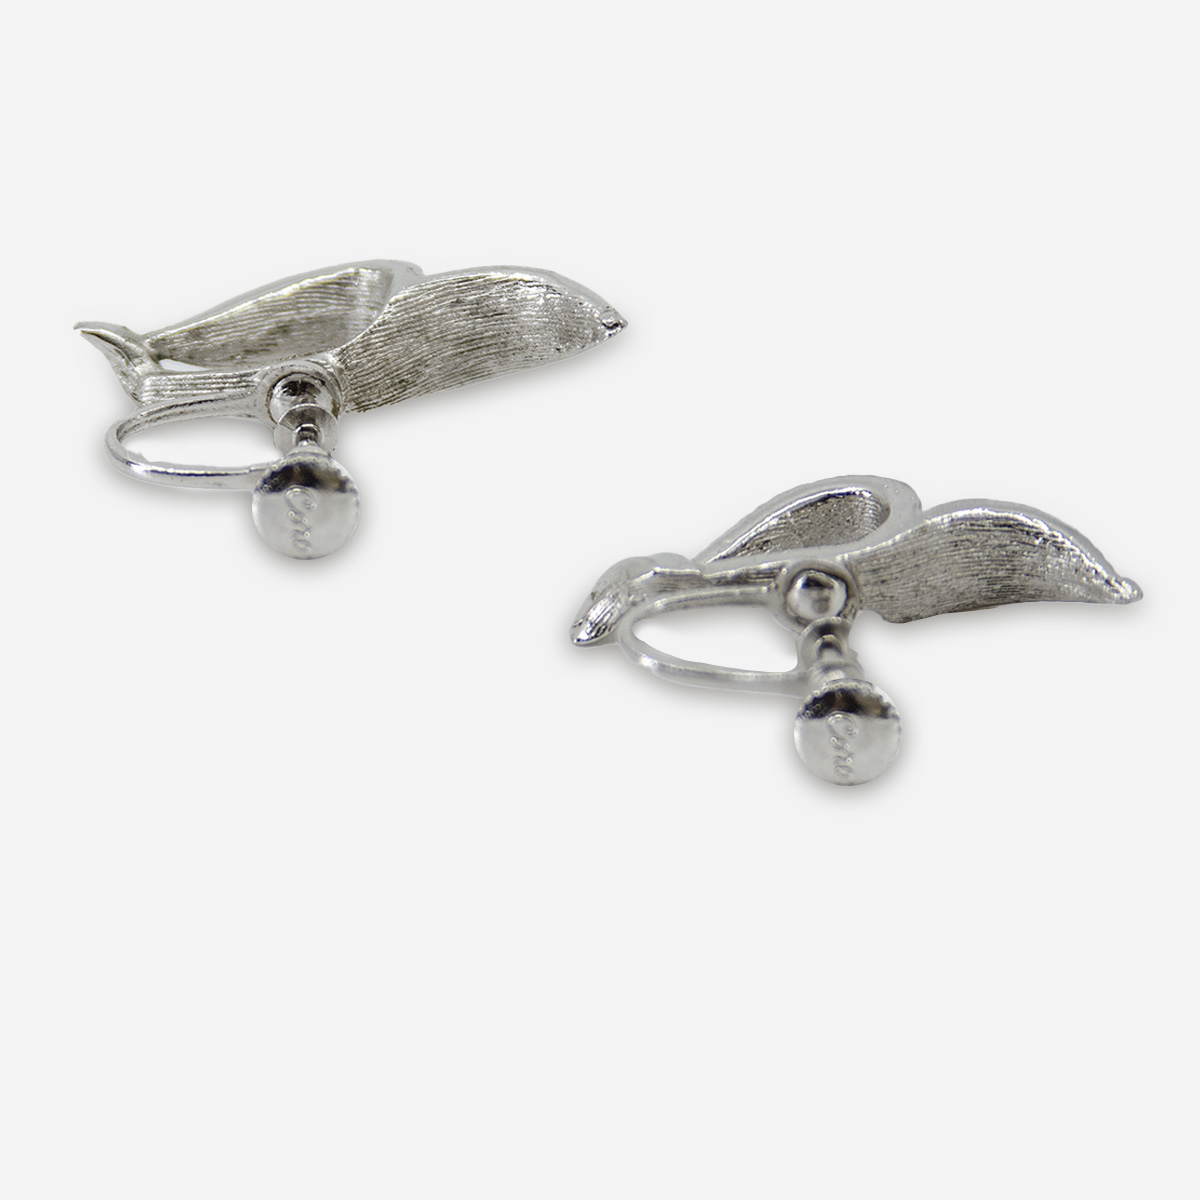 1950s modernist earrings by Coro